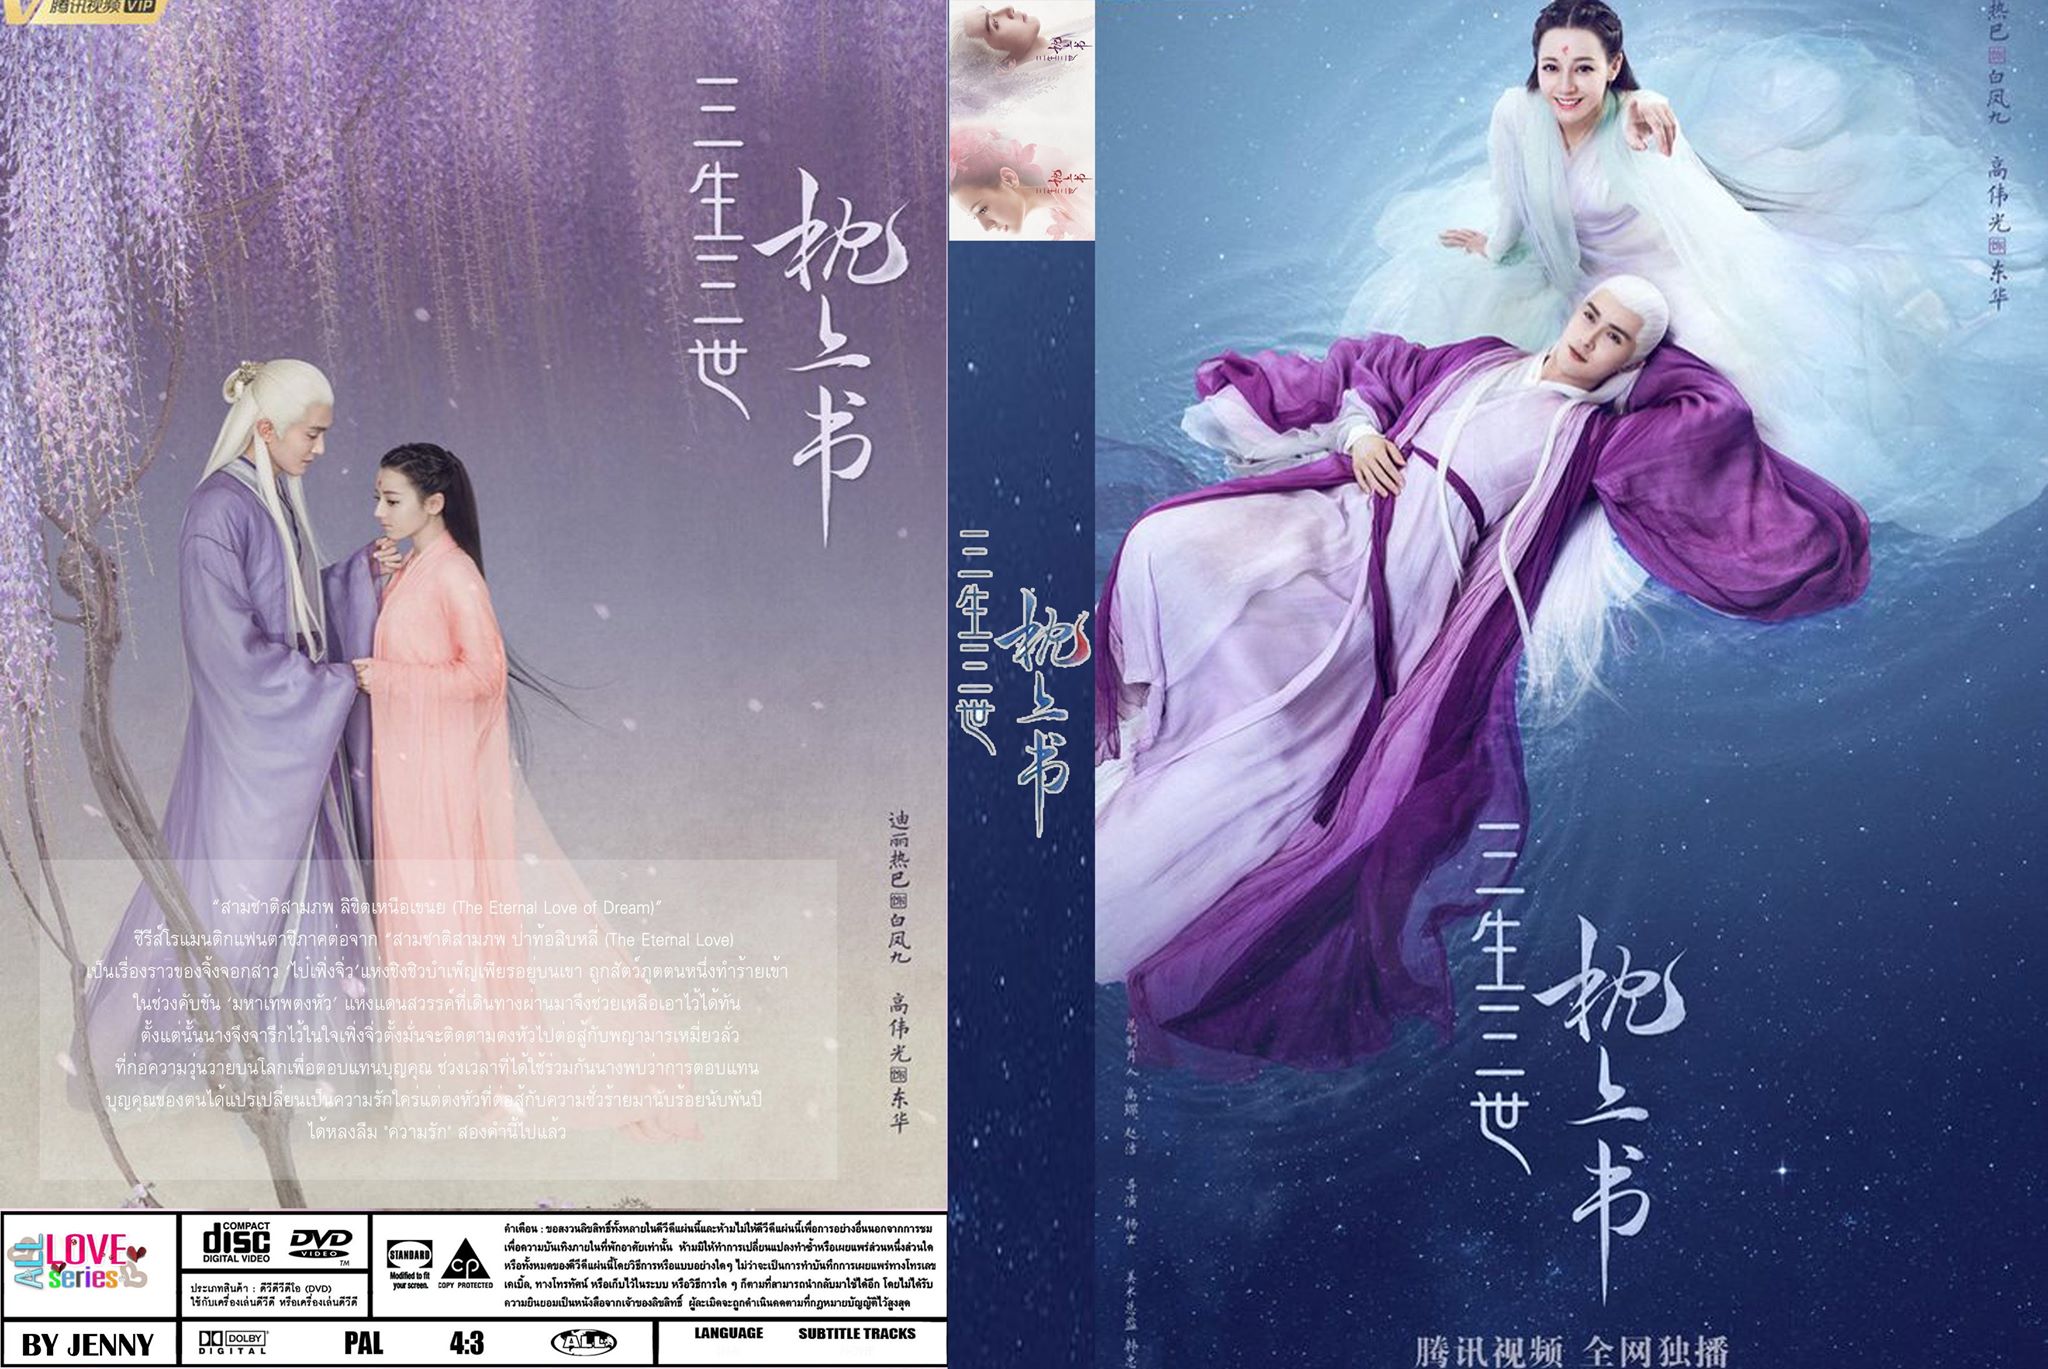 หนังจีนชุด Eternal Love Of Dream สามชาติสามภพลิขิตเหนือเขนย [ซับไทย] 11 แผ่นจบ hd ดีวีดี  ปก+สกรีน